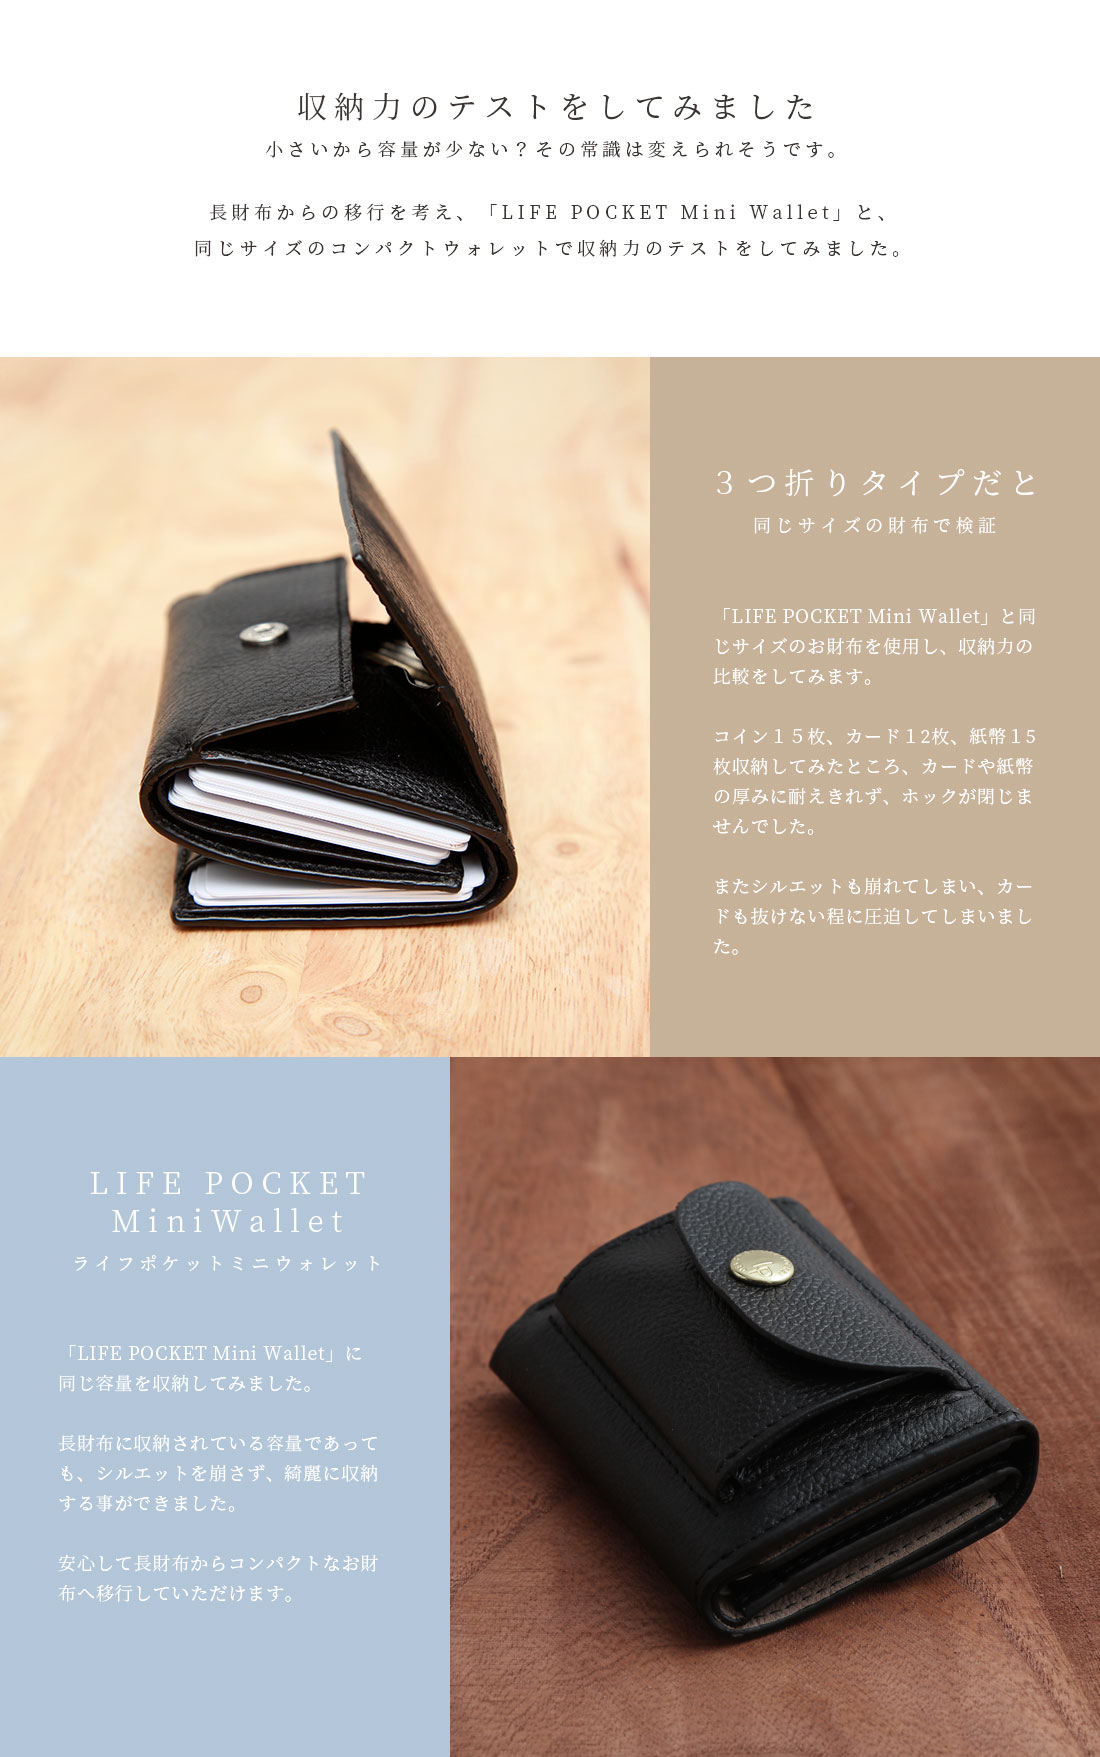 【楽天市場】「なくさない 財布 」ミニ財布 小さくて使いやすい、とても安全な本革のお財布です。大容量×スキミング防止対応「ライフポケット ミニ